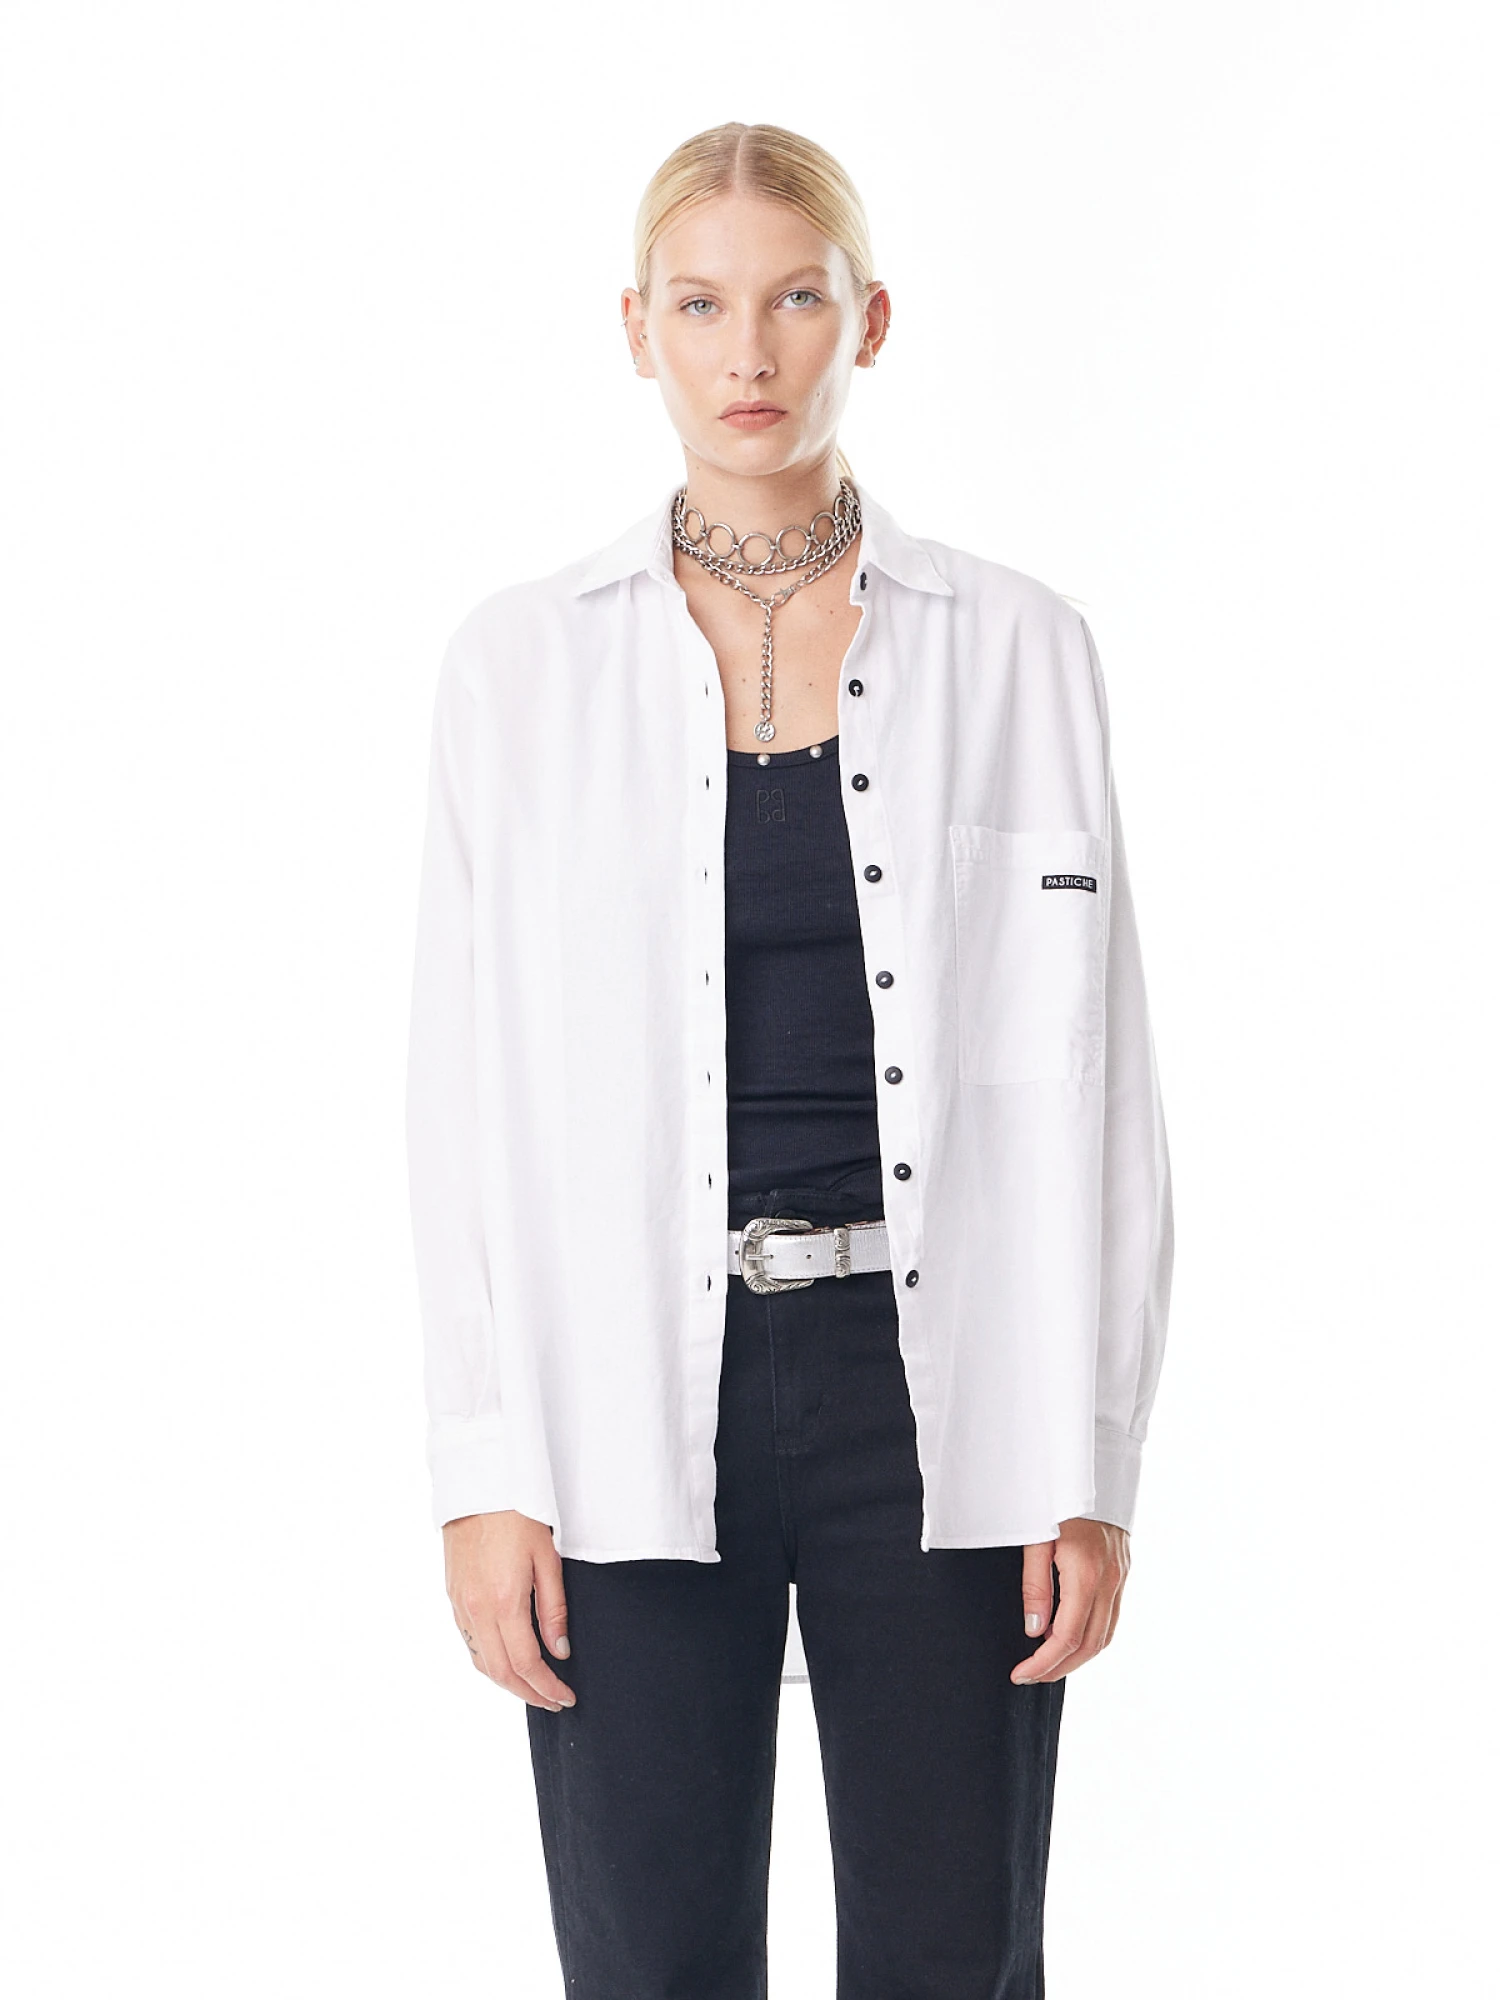 Camisa Noble Oxford blanco m